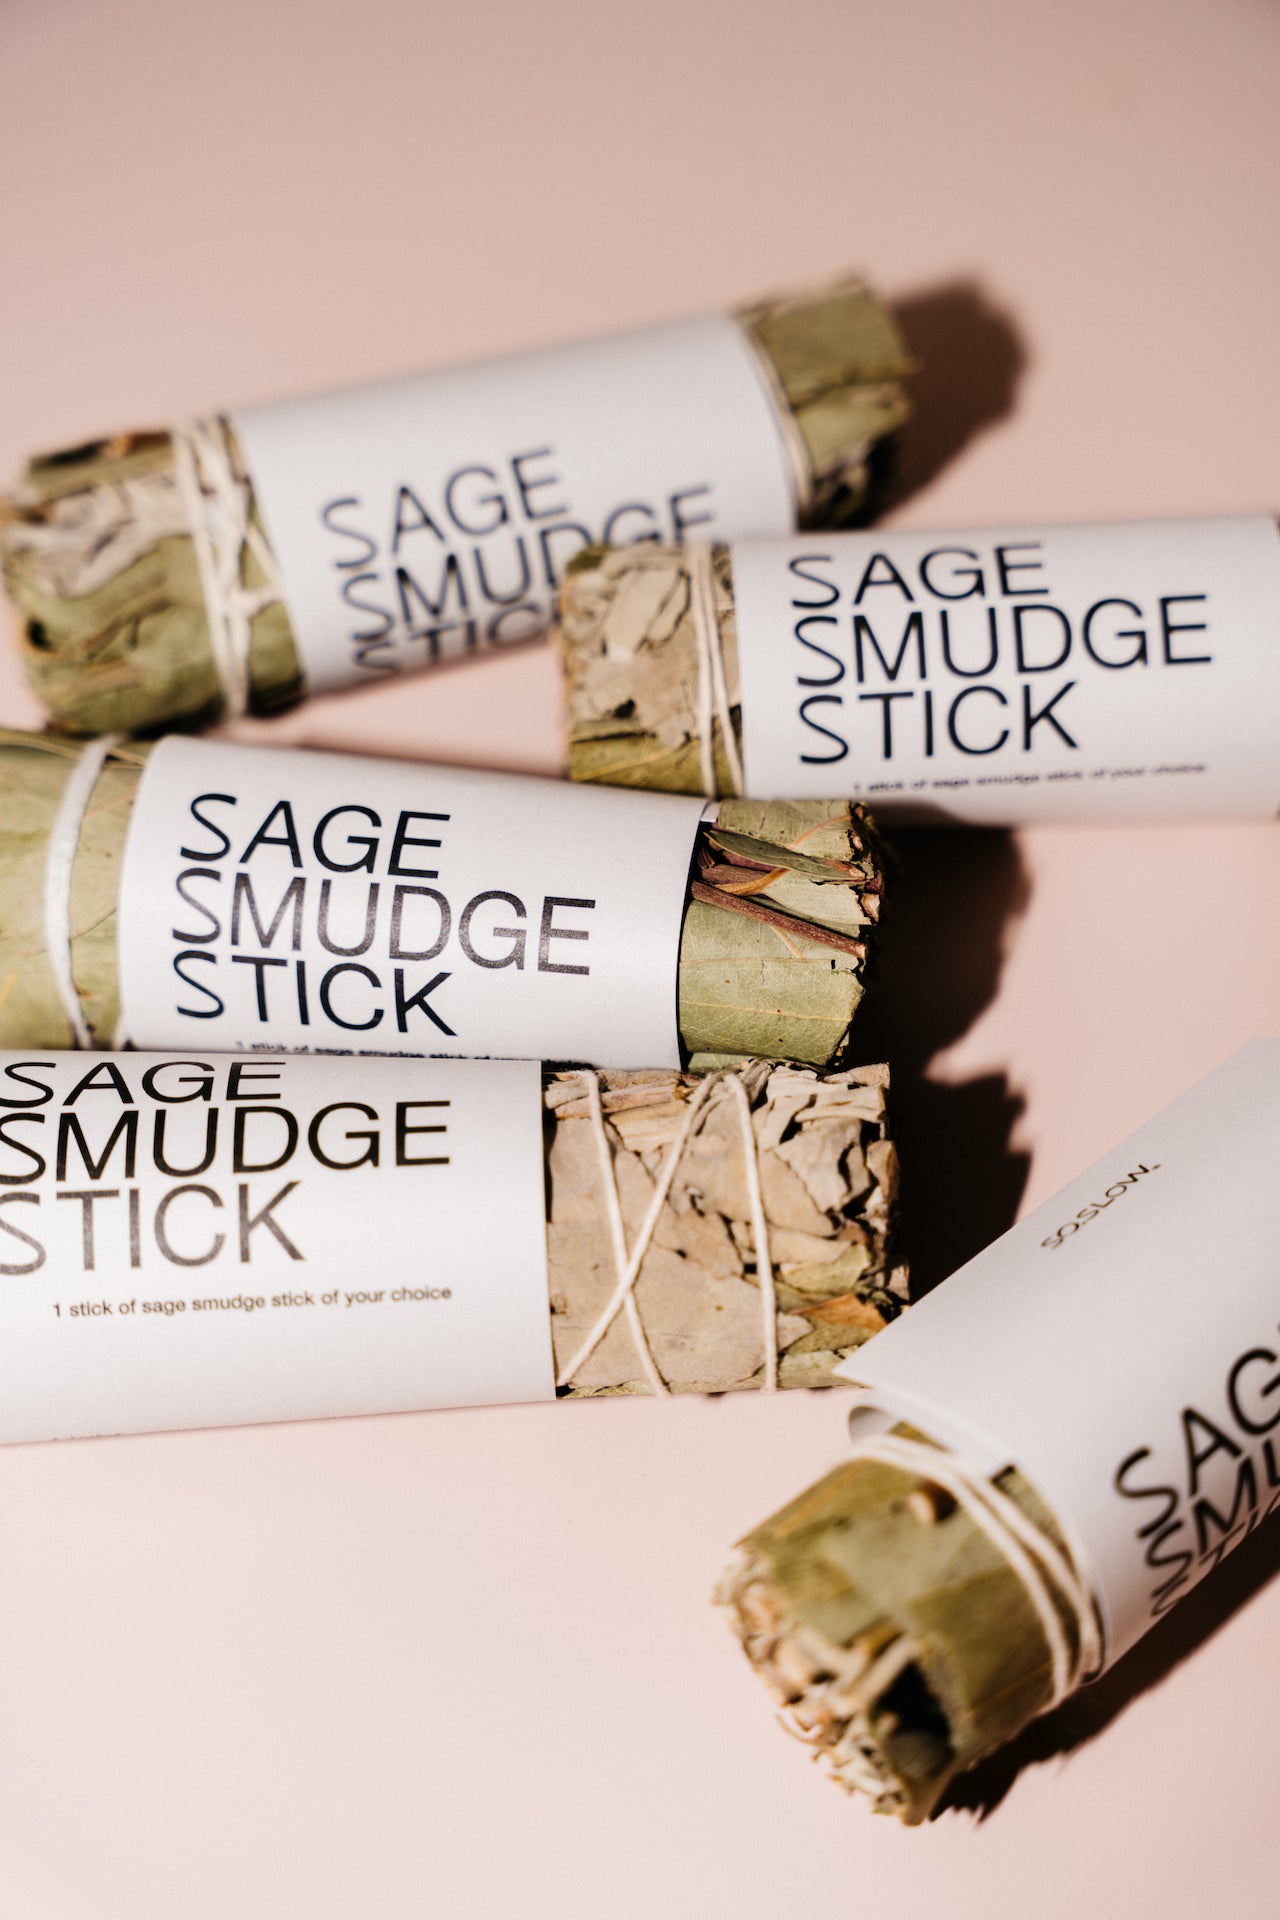 Smudge Sticks